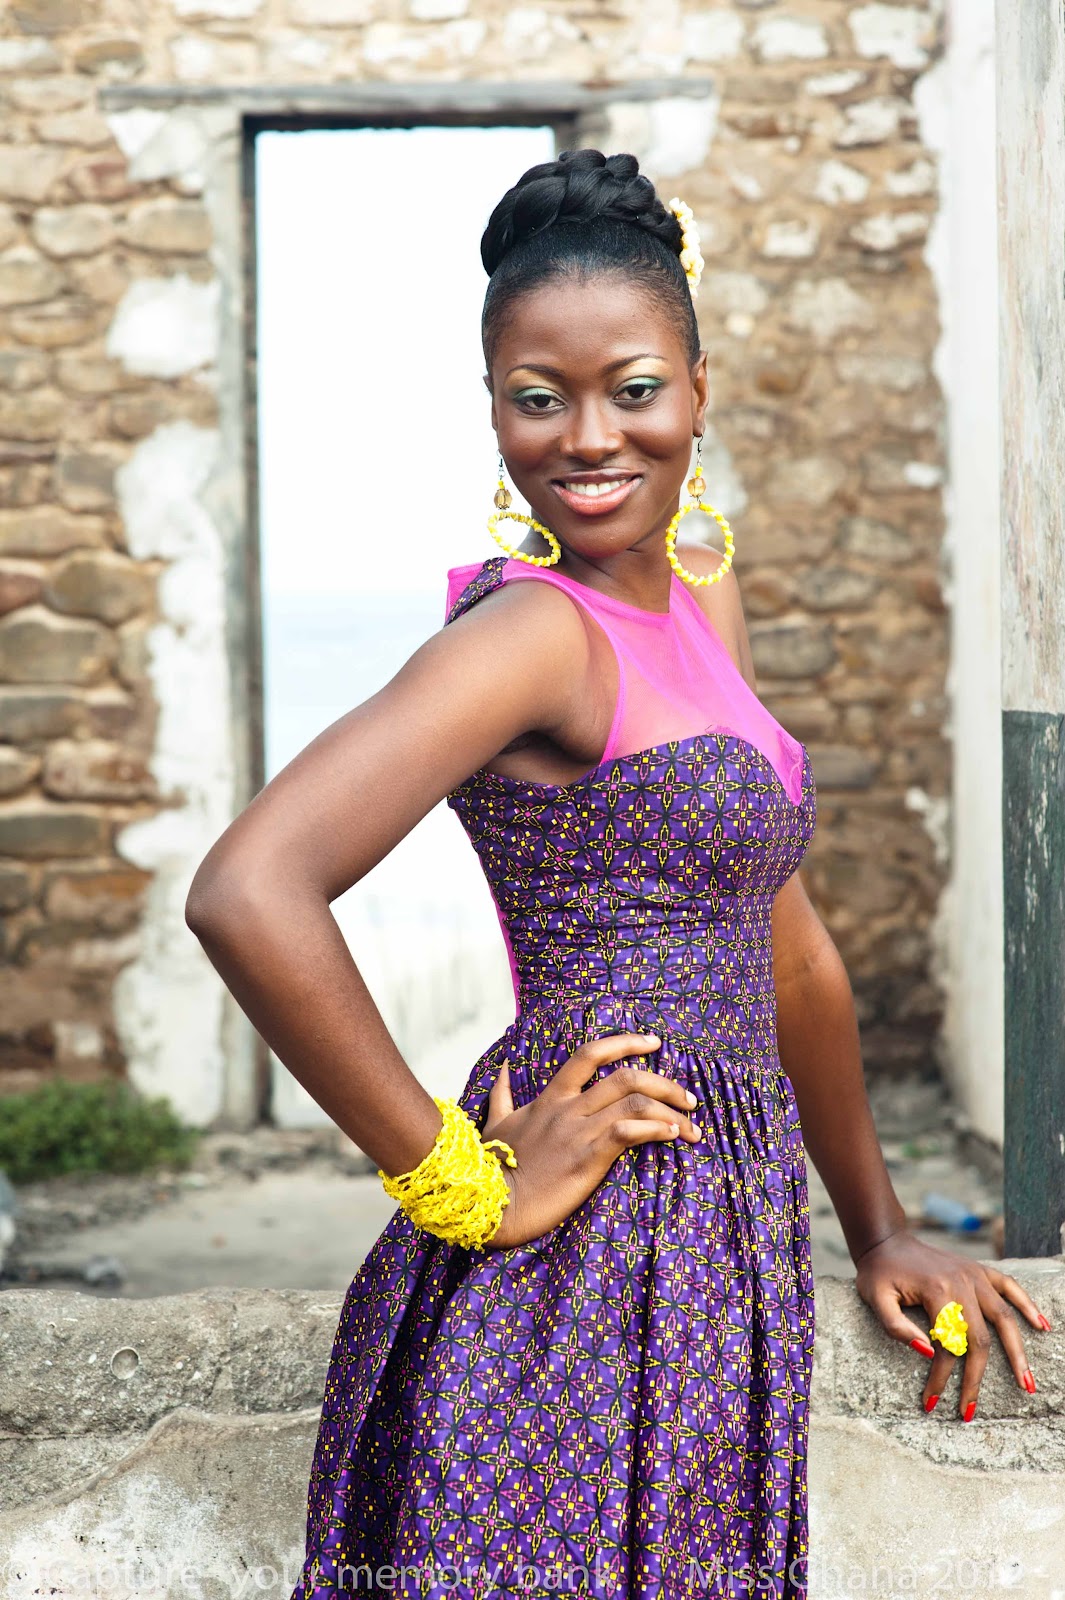 Beautiful Ghana Photos 20 Babes For The Miss Ghana 2012 Contest